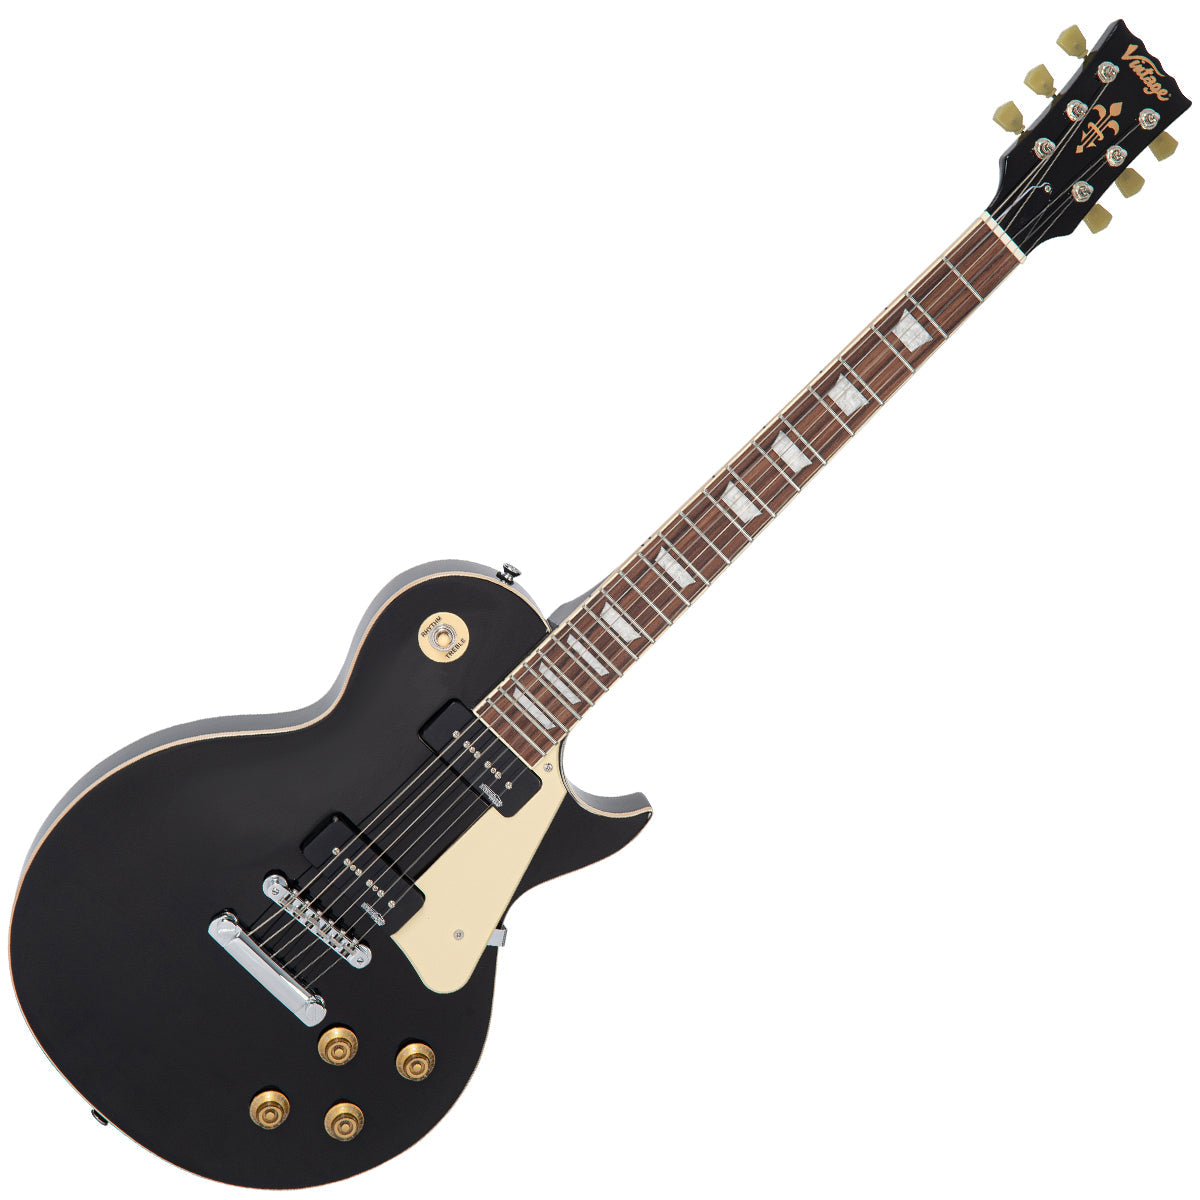 Vintage V100P ReIssued Electric Guitar ~ Boulevard Black, Electric Guitar for sale at Richards Guitars.